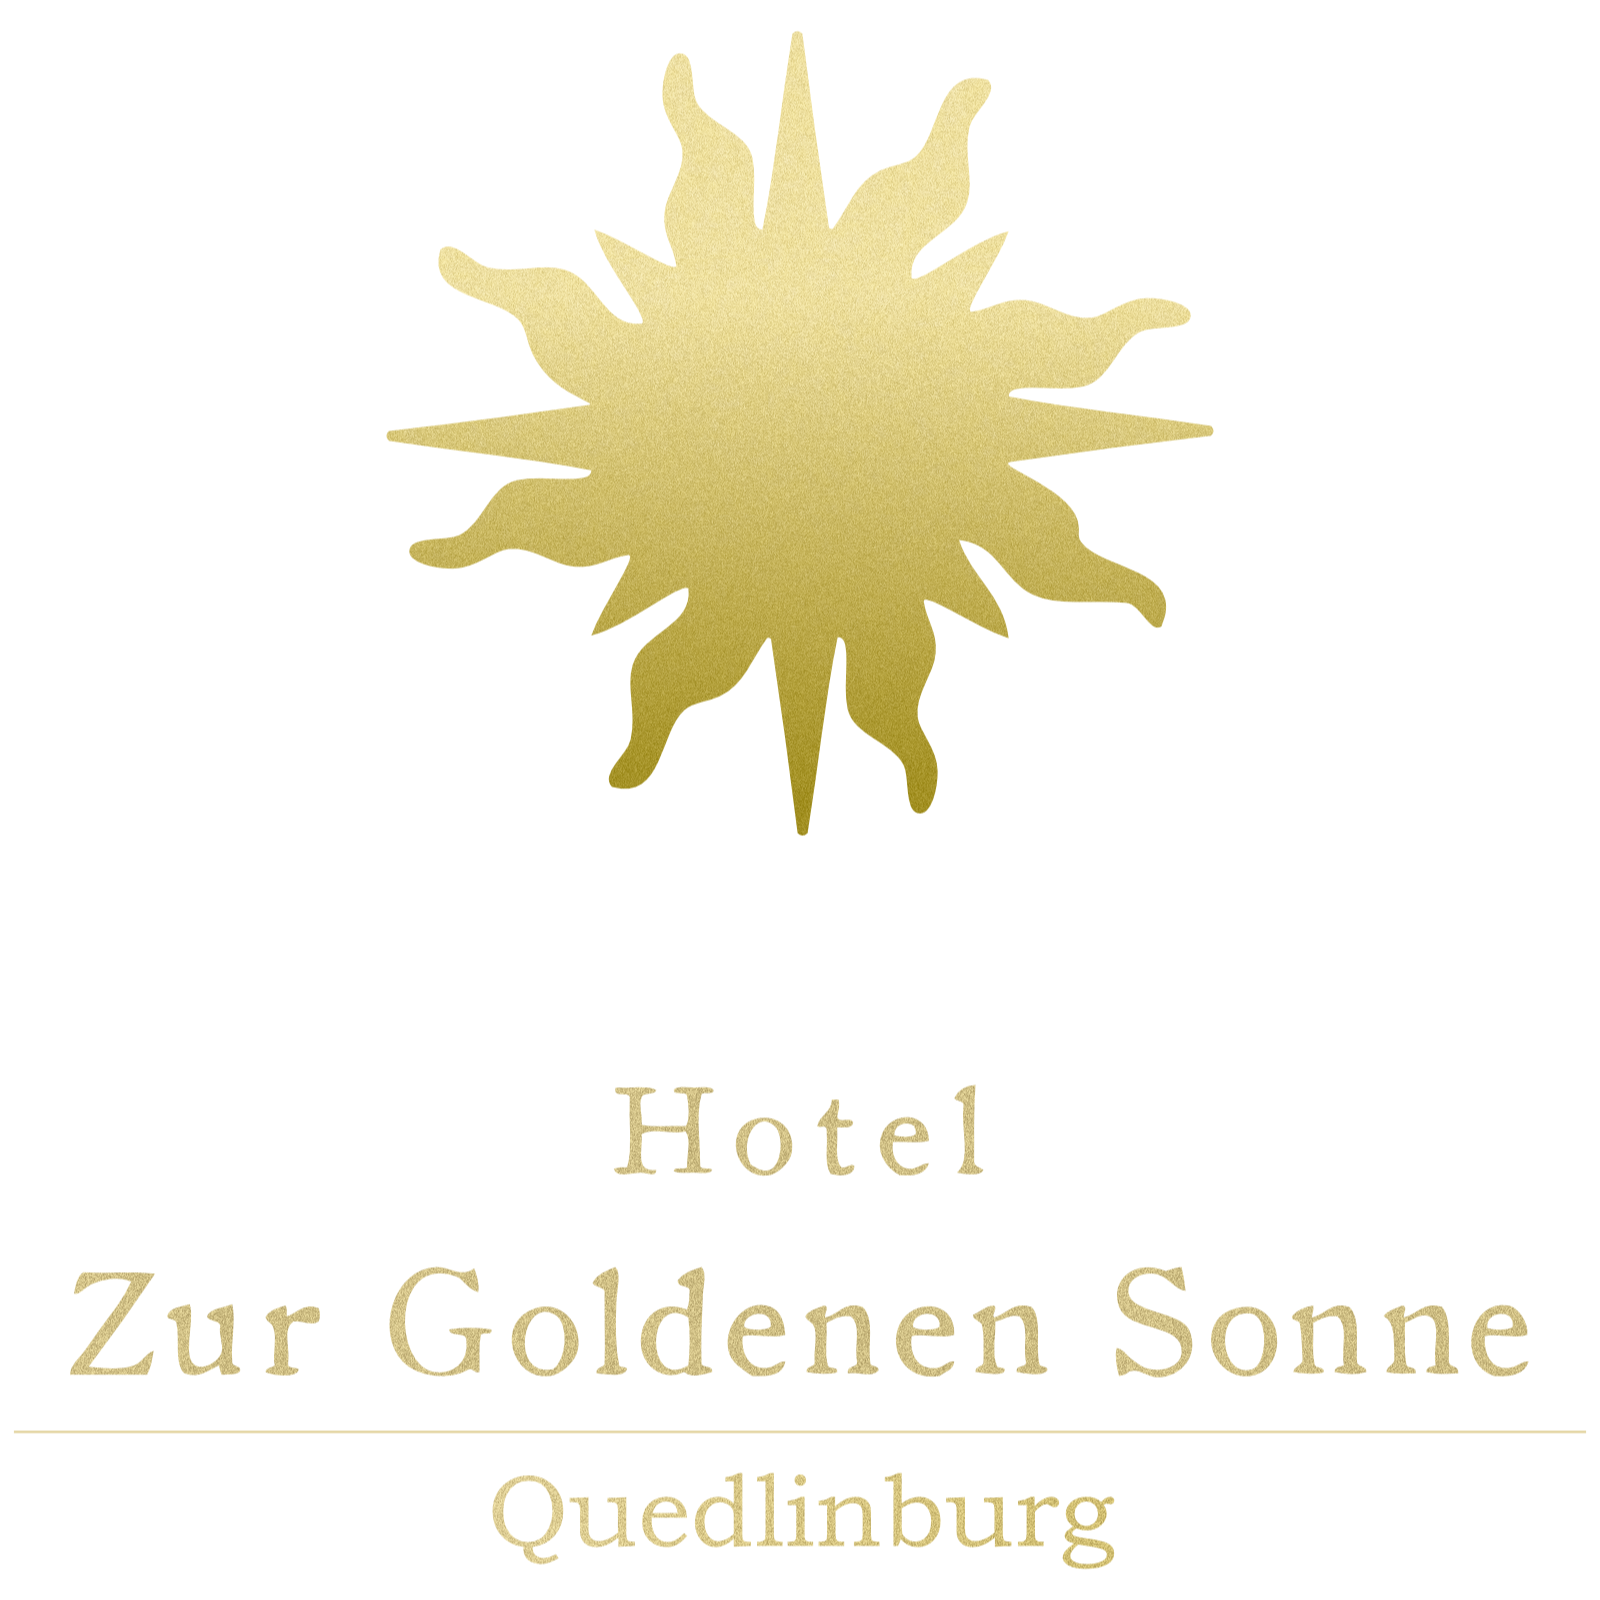 Quedlinburg Hotel - Zur Goldenen Sonne in Quedlinburg - Logo